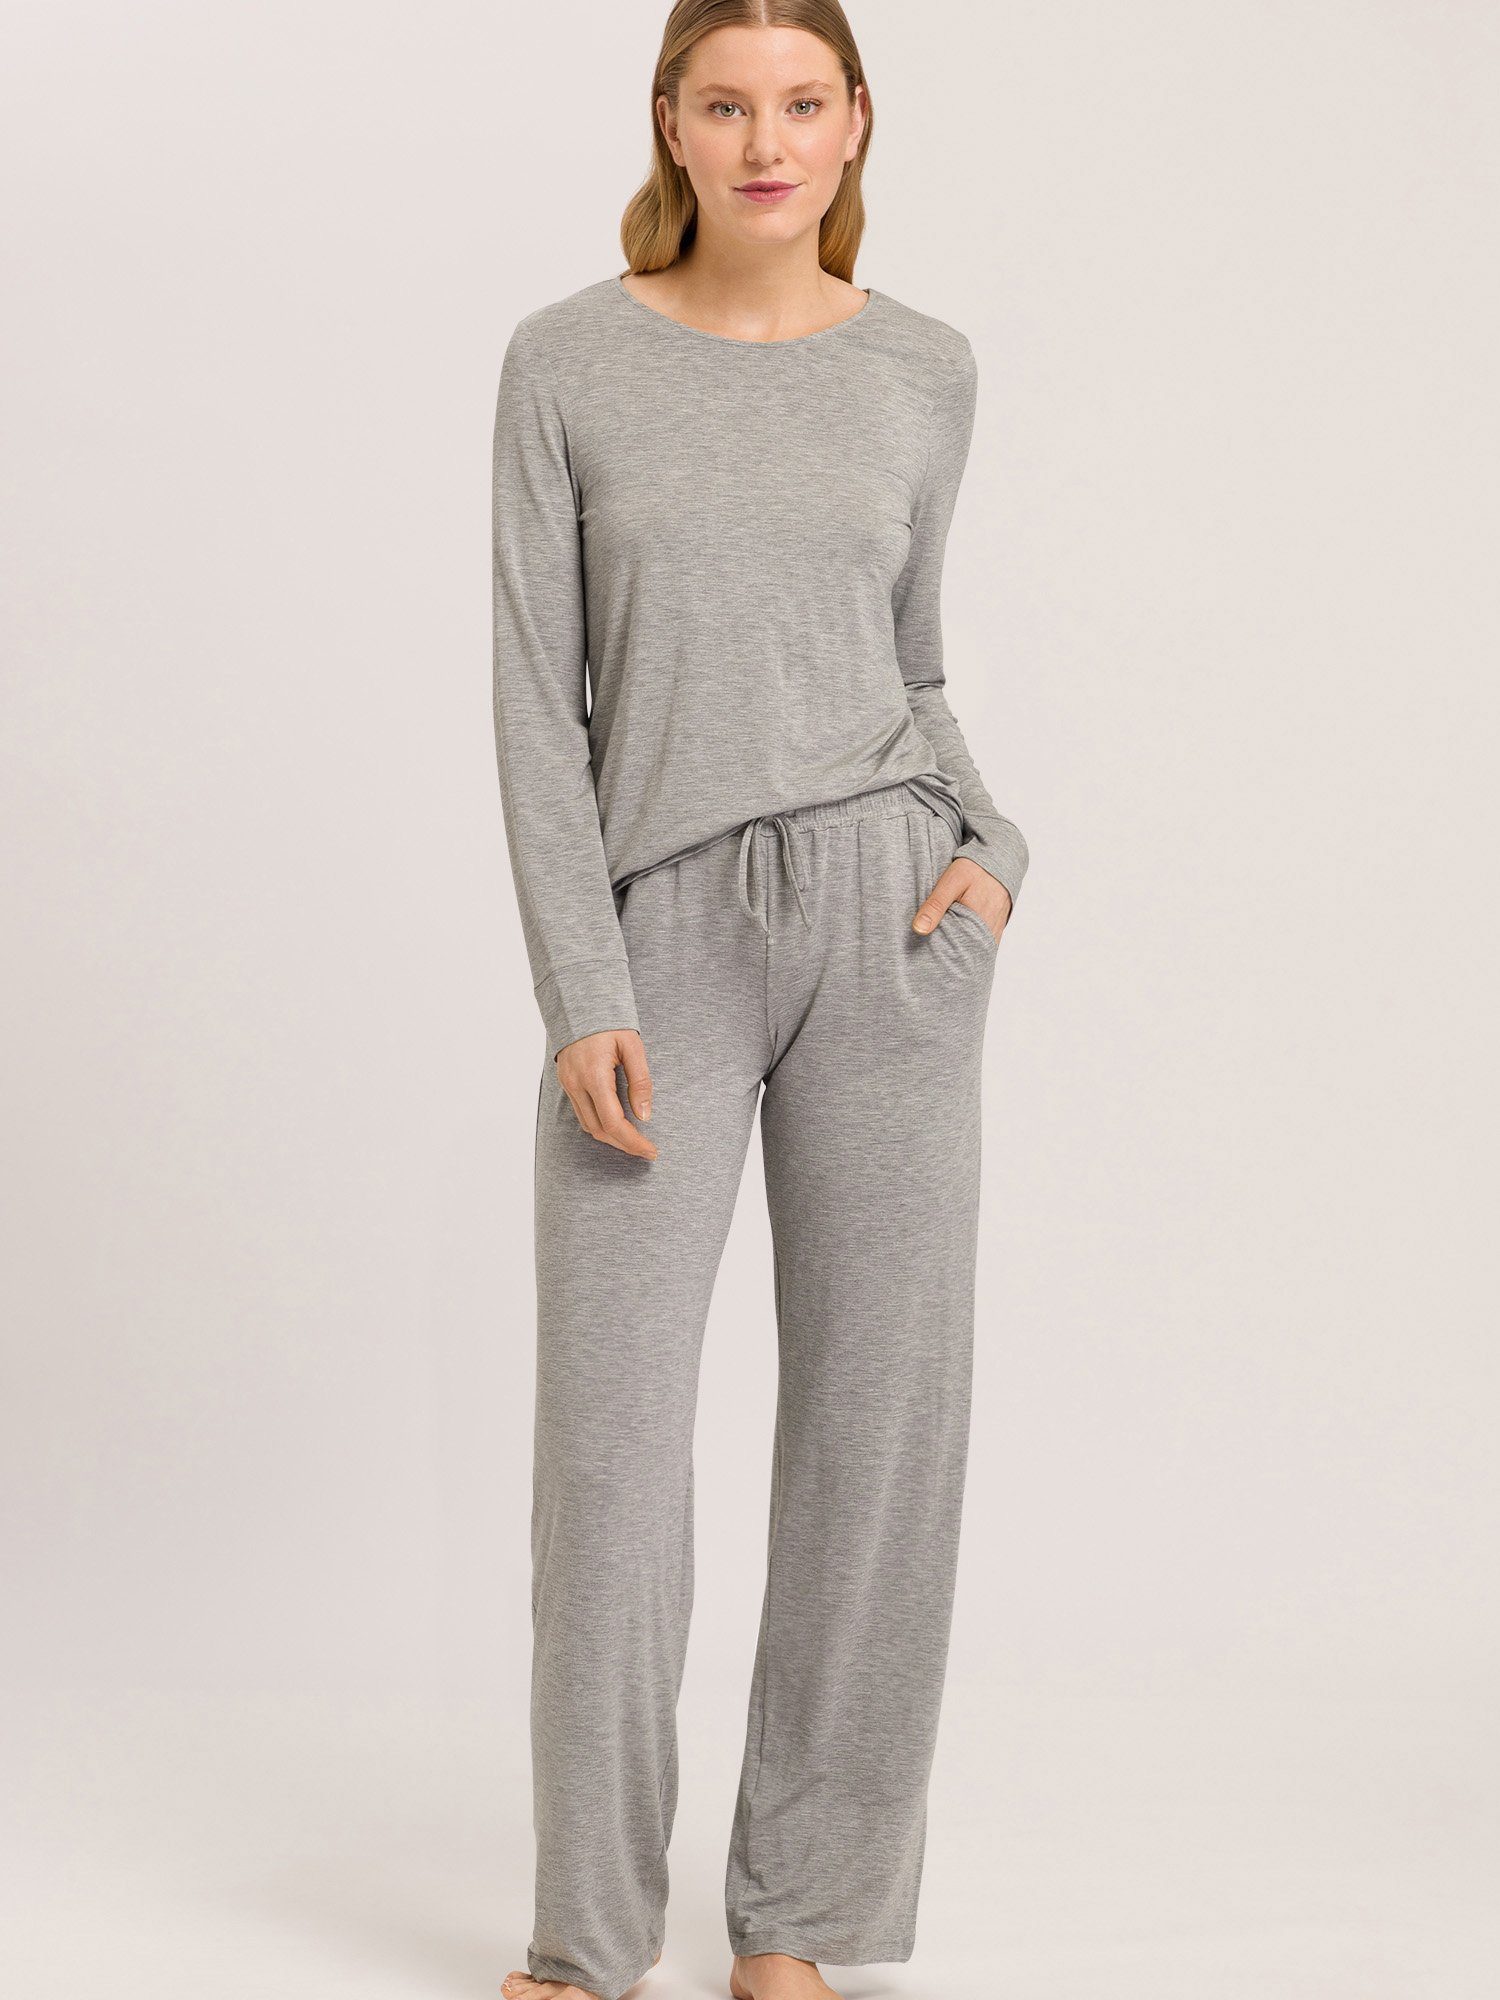 grey melange pyjama Pyjamahose Elegance Hanro schlaf-hose schlafmode Natural